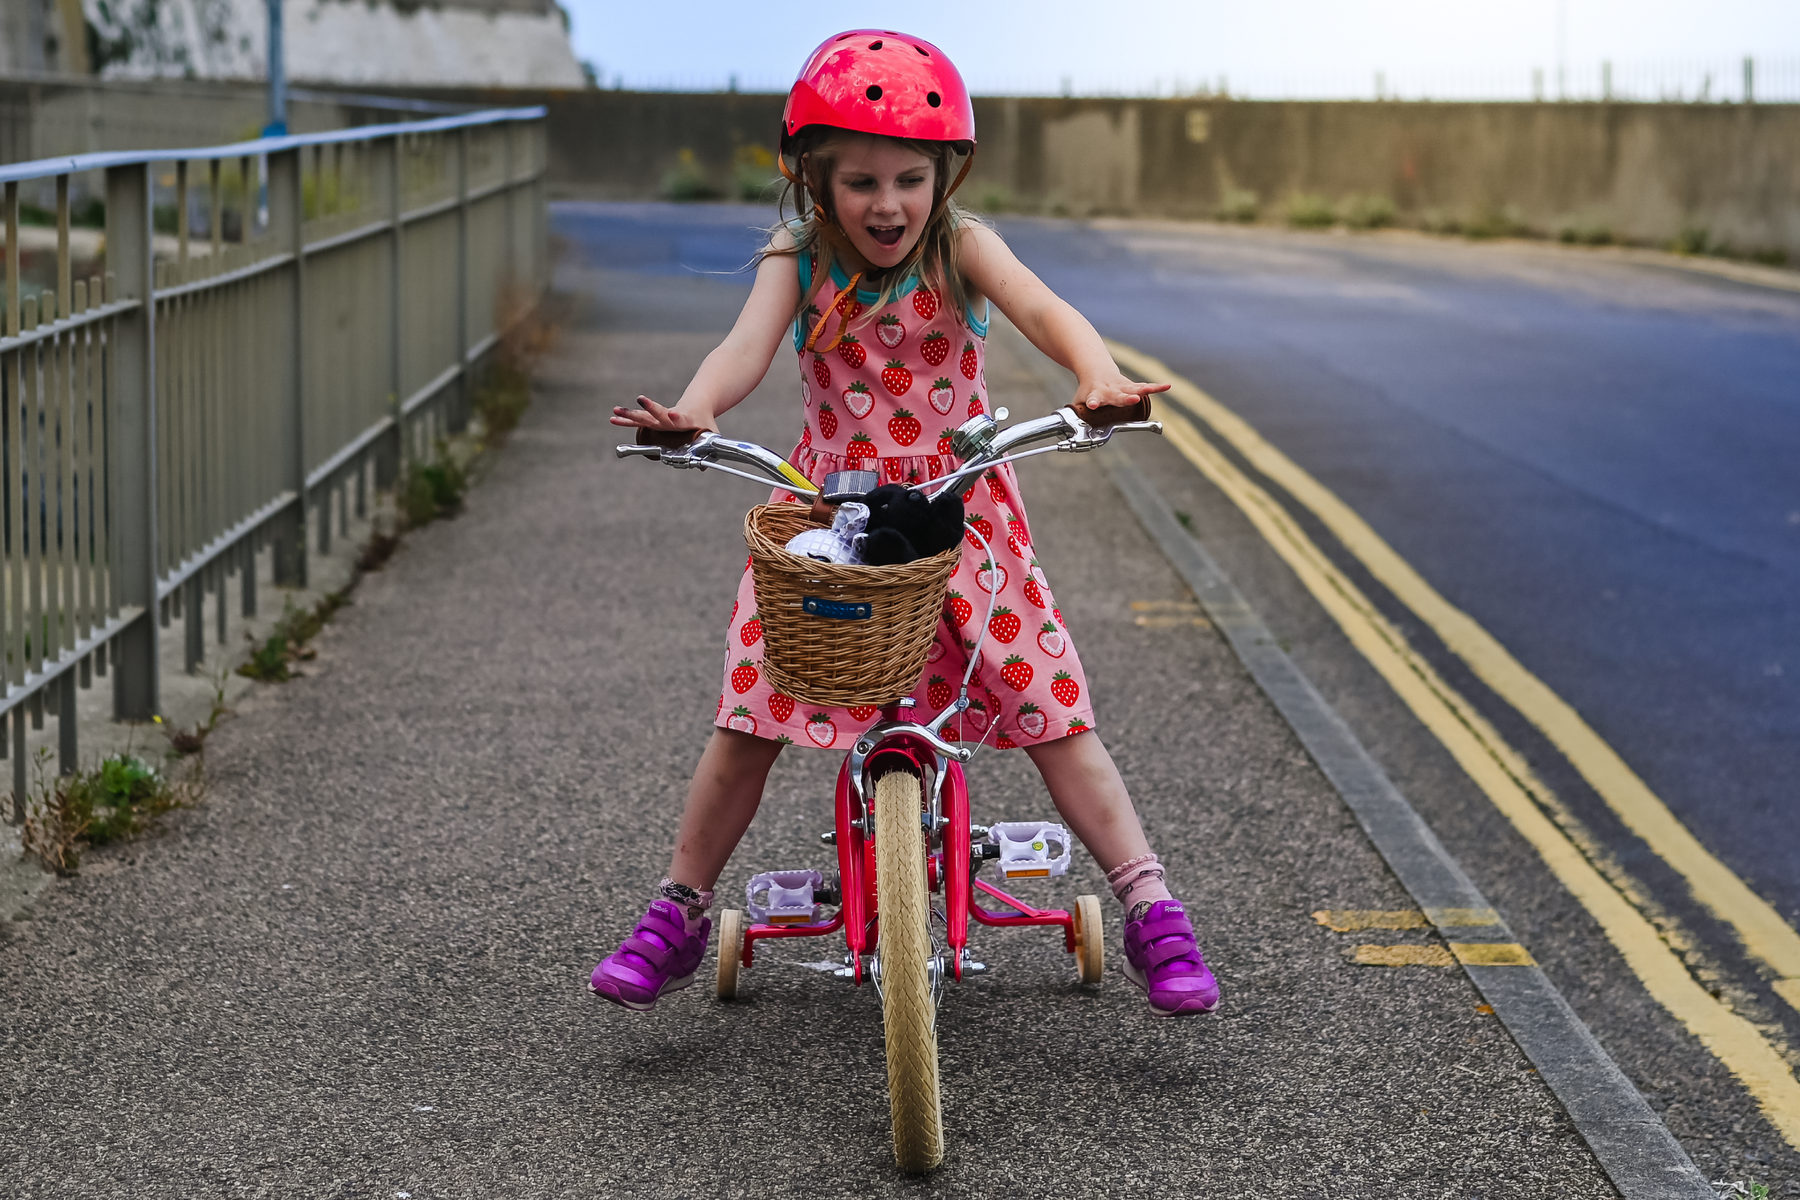 Bicicleta de aprendizaje para niños 4-6 años 16" Gingersnap